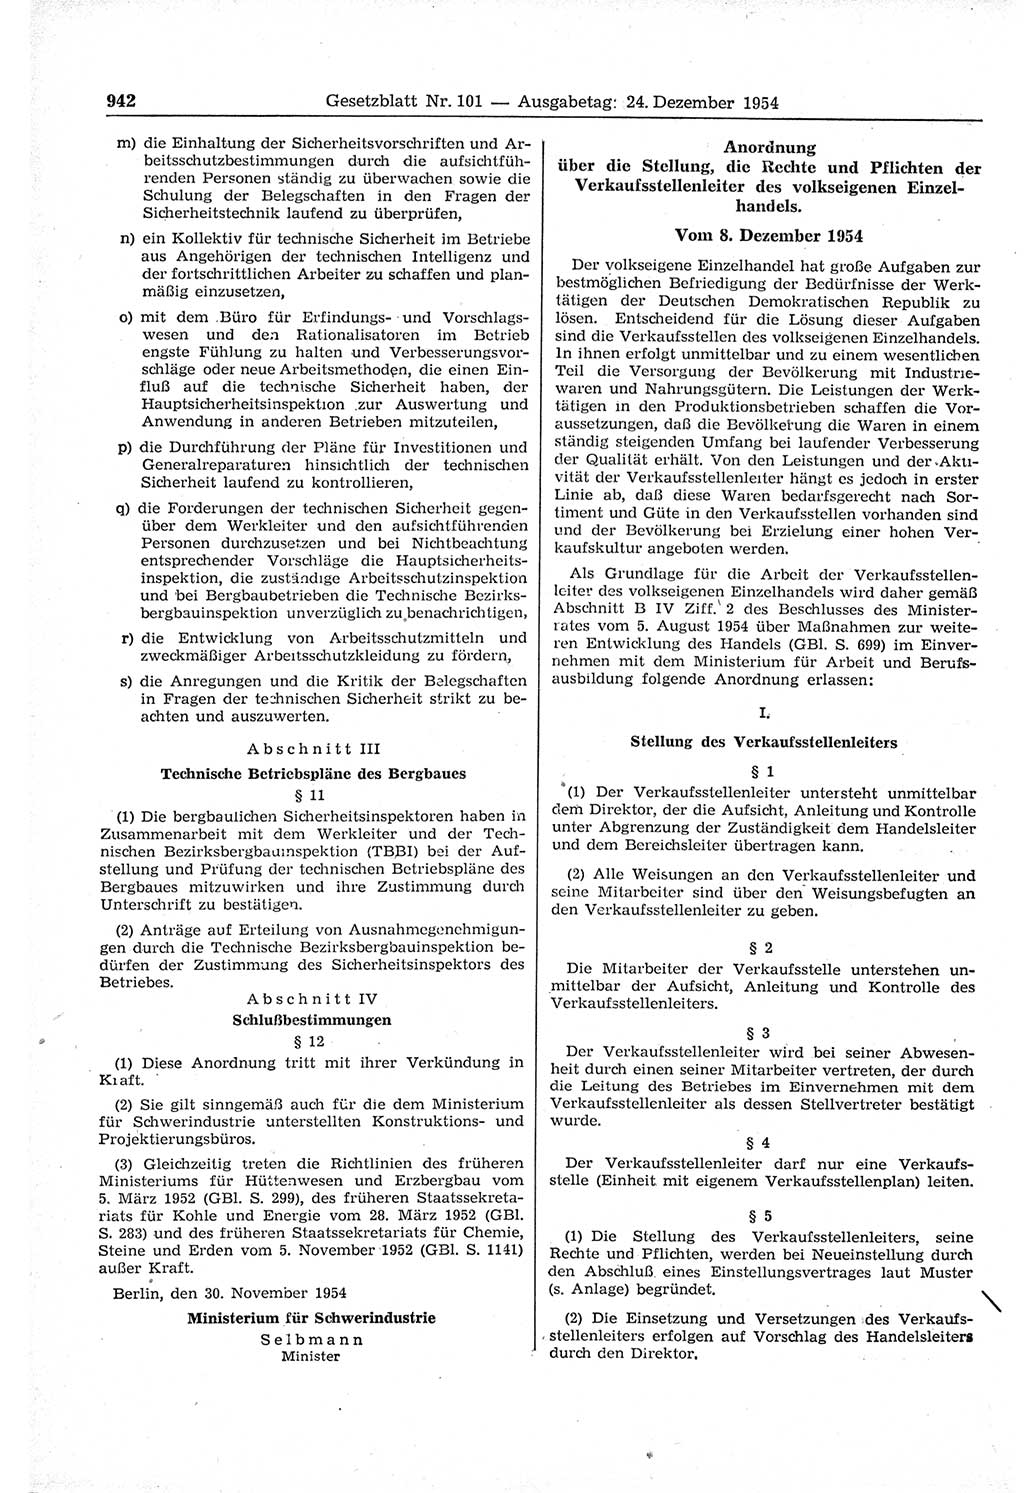 Gesetzblatt (GBl.) der Deutschen Demokratischen Republik (DDR) 1954, Seite 942 (GBl. DDR 1954, S. 942)